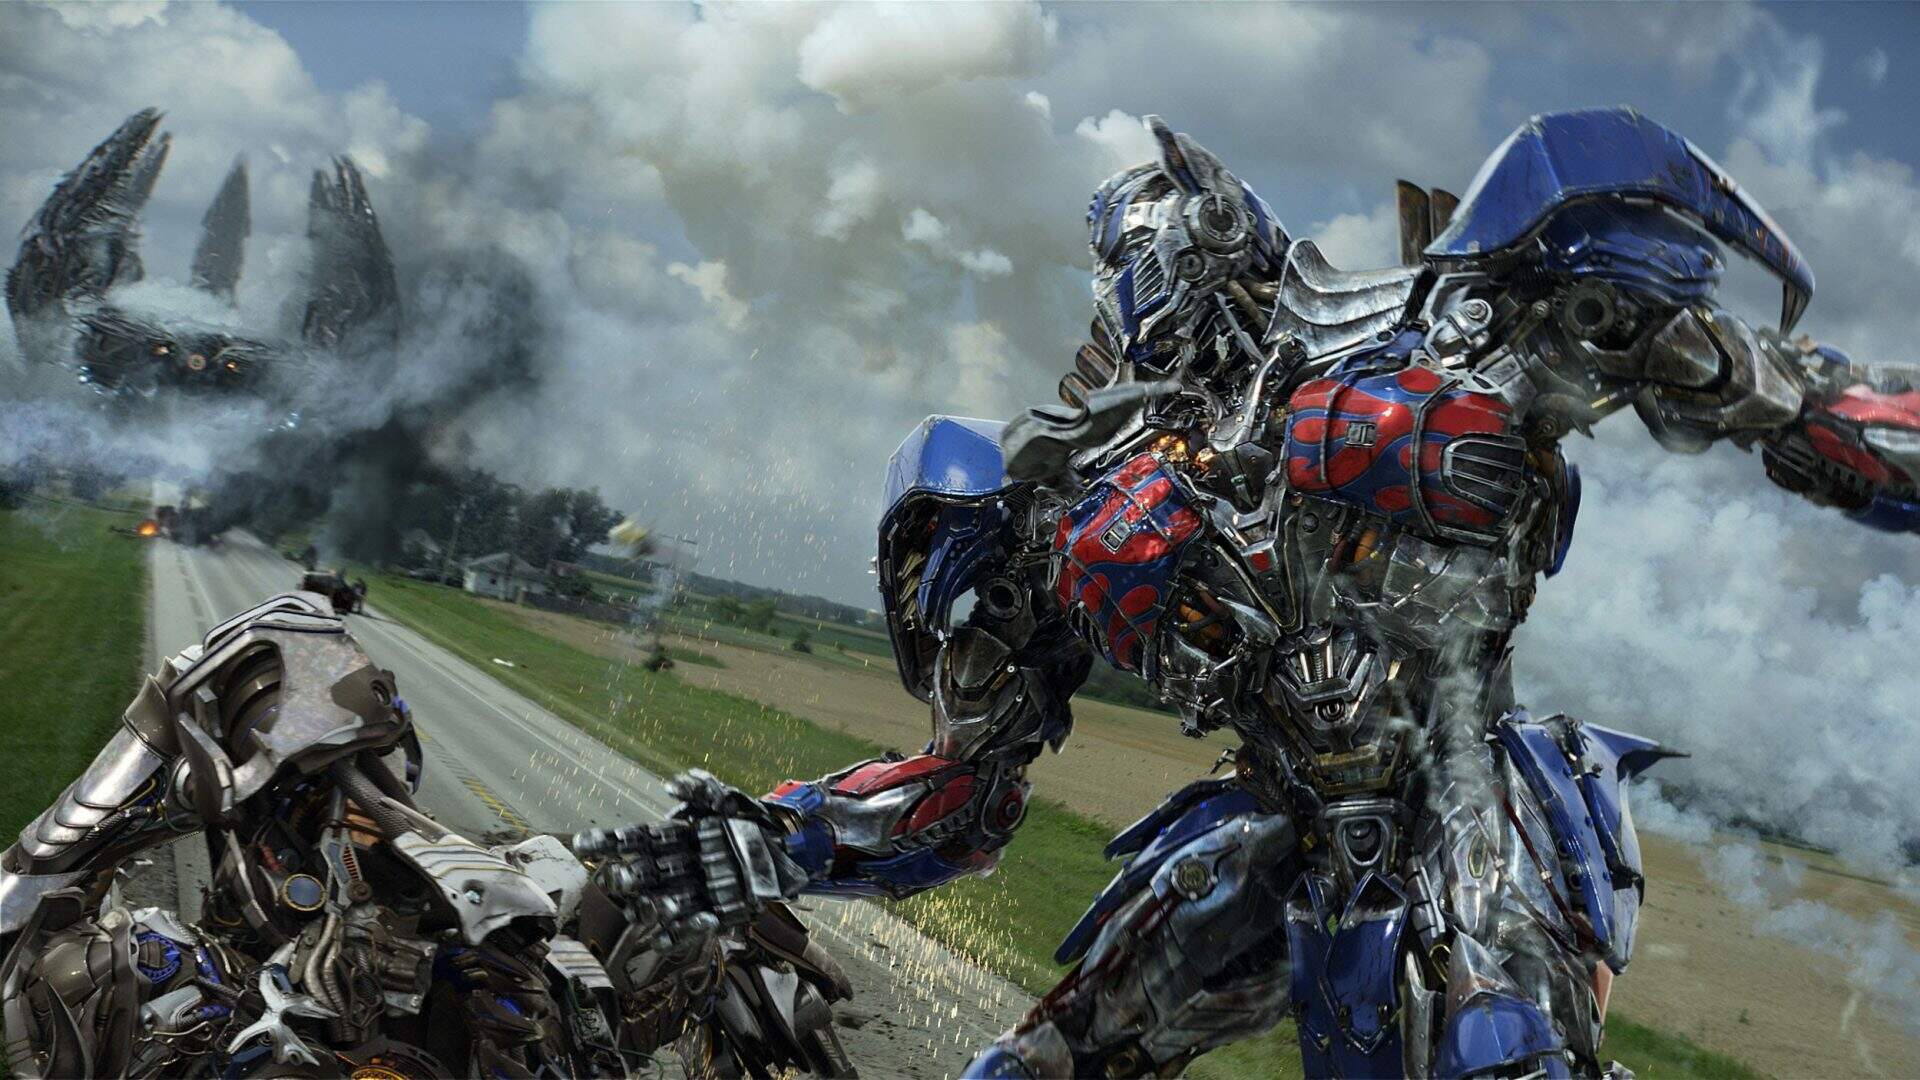 Bilheteria de 'Transformers: O despertar das feras' fica abaixo dos filmes  anteriores